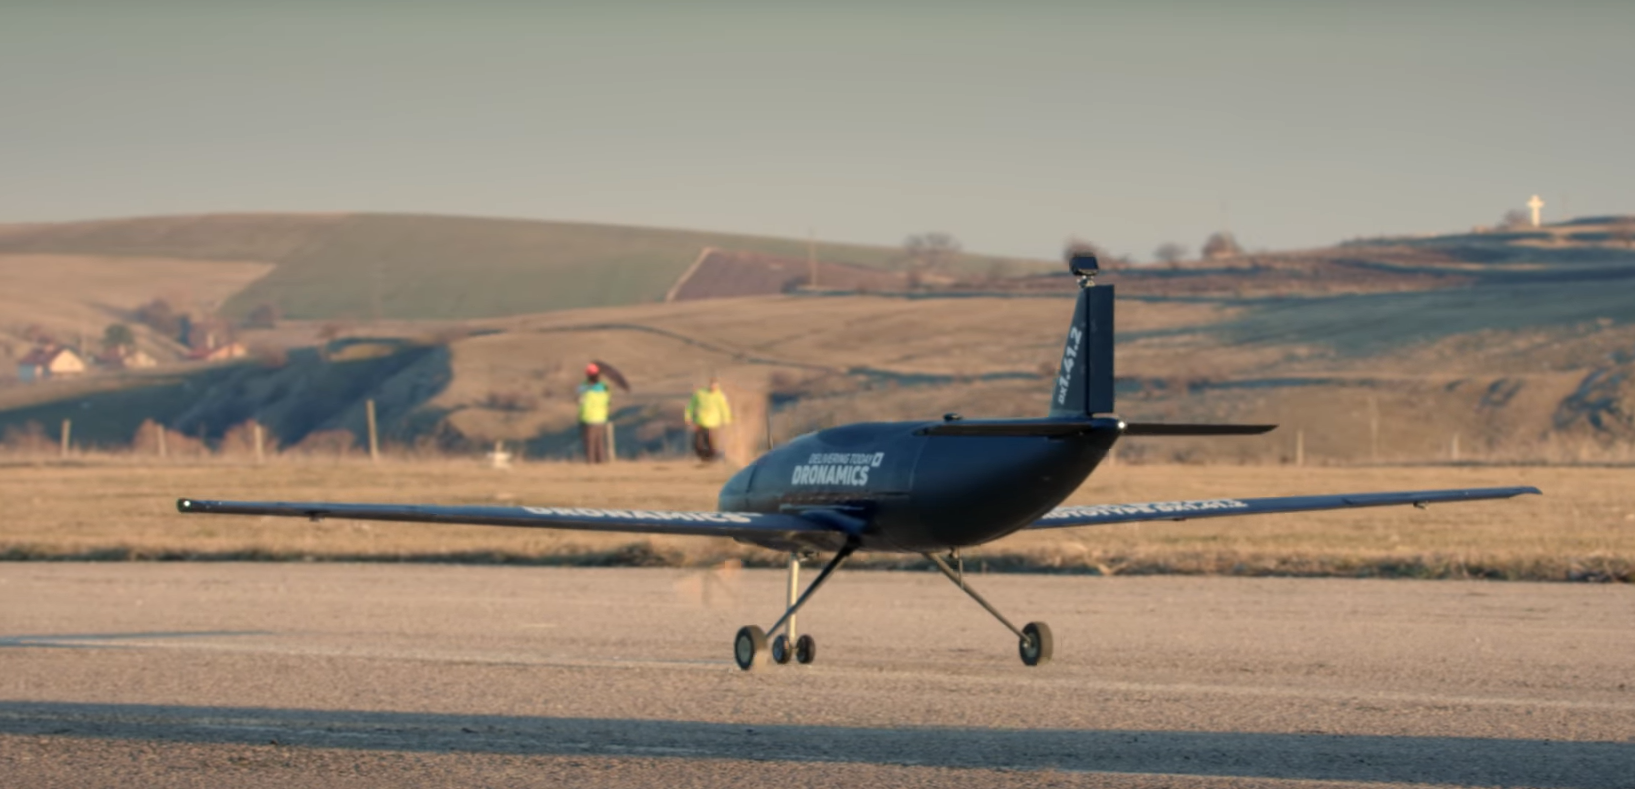 O nouă oportunitate de investiţii pe platforma Seedblink: DRONAMICS - serviciu de logistică cu drone pilotate de la distanţă